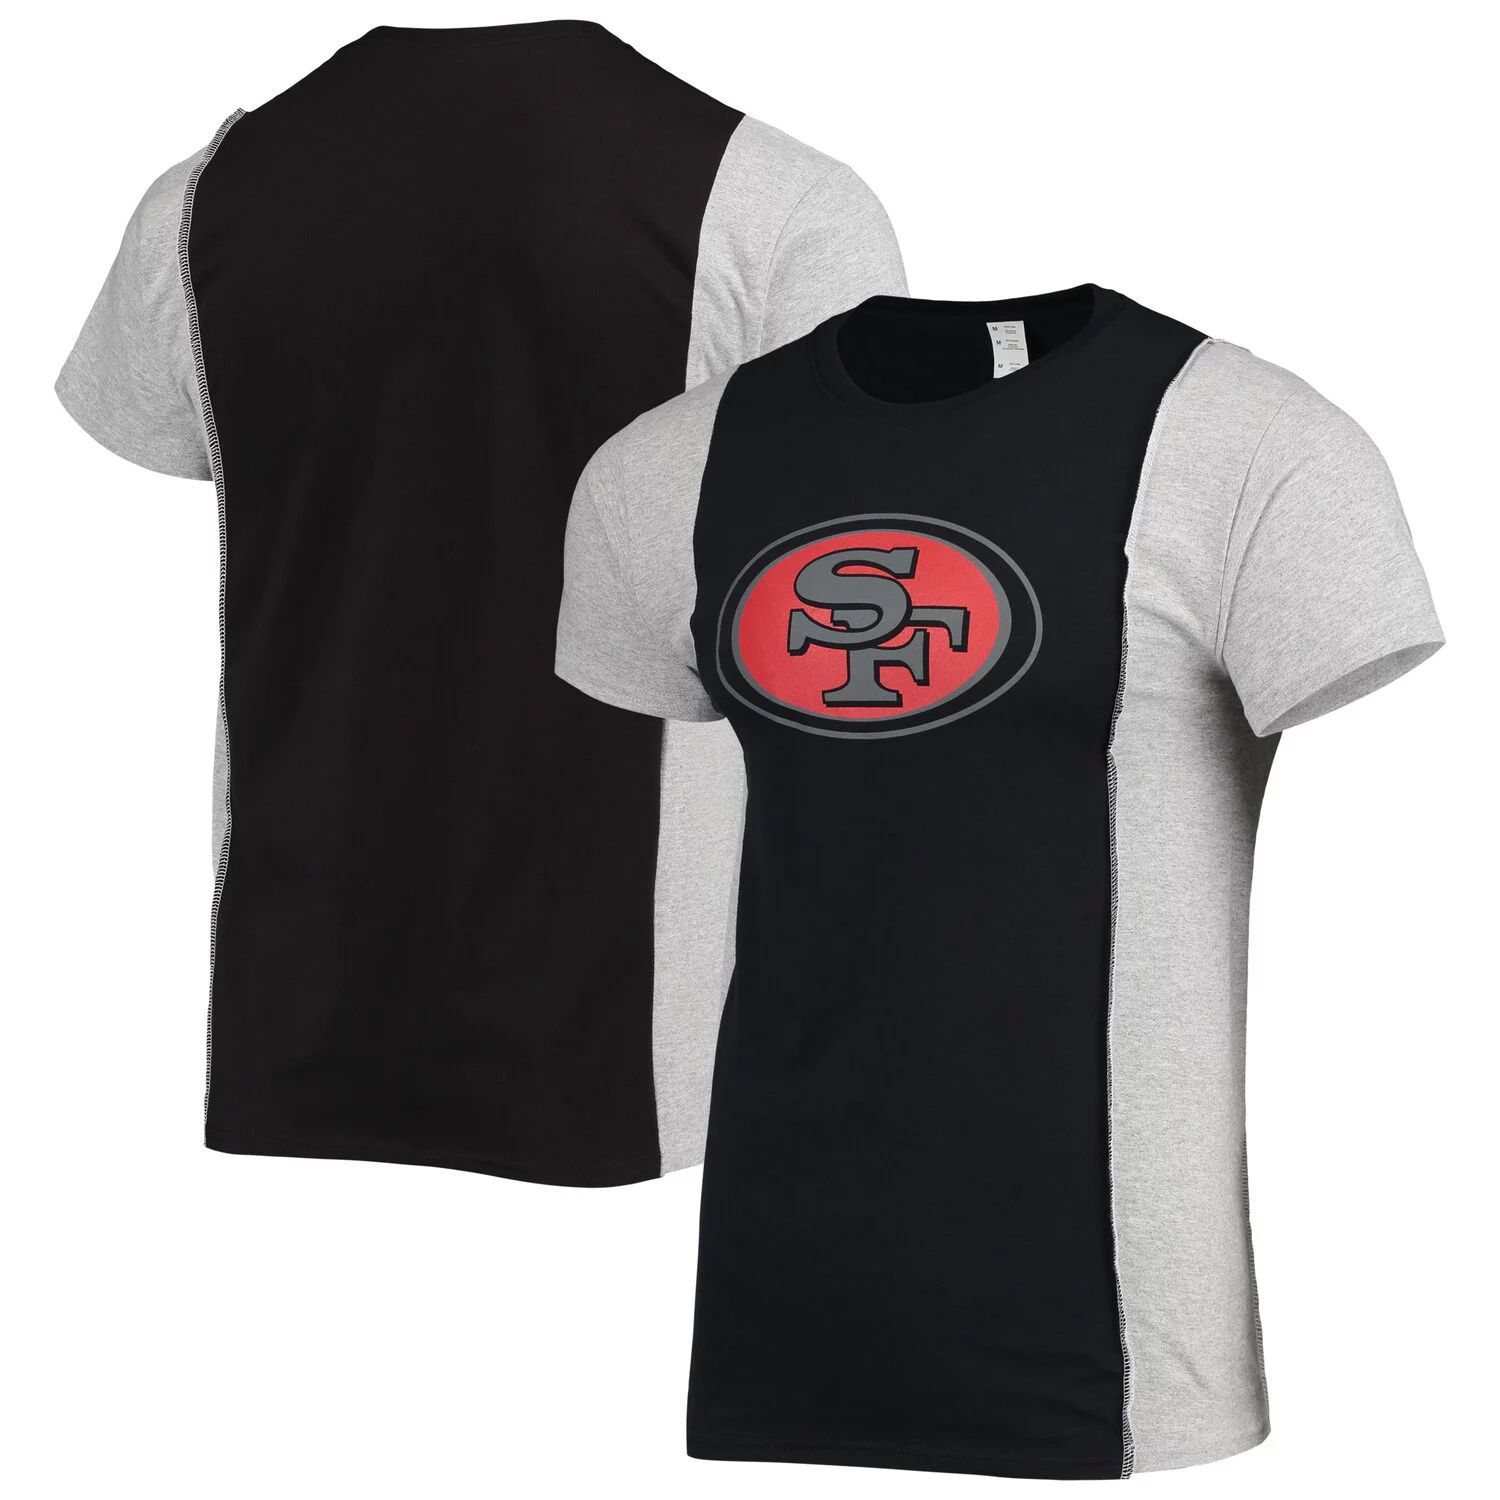 Мужская футболка Refried Apparel черная/серая с мелированием San Francisco 49ers из экологически чистого материала с разрезом